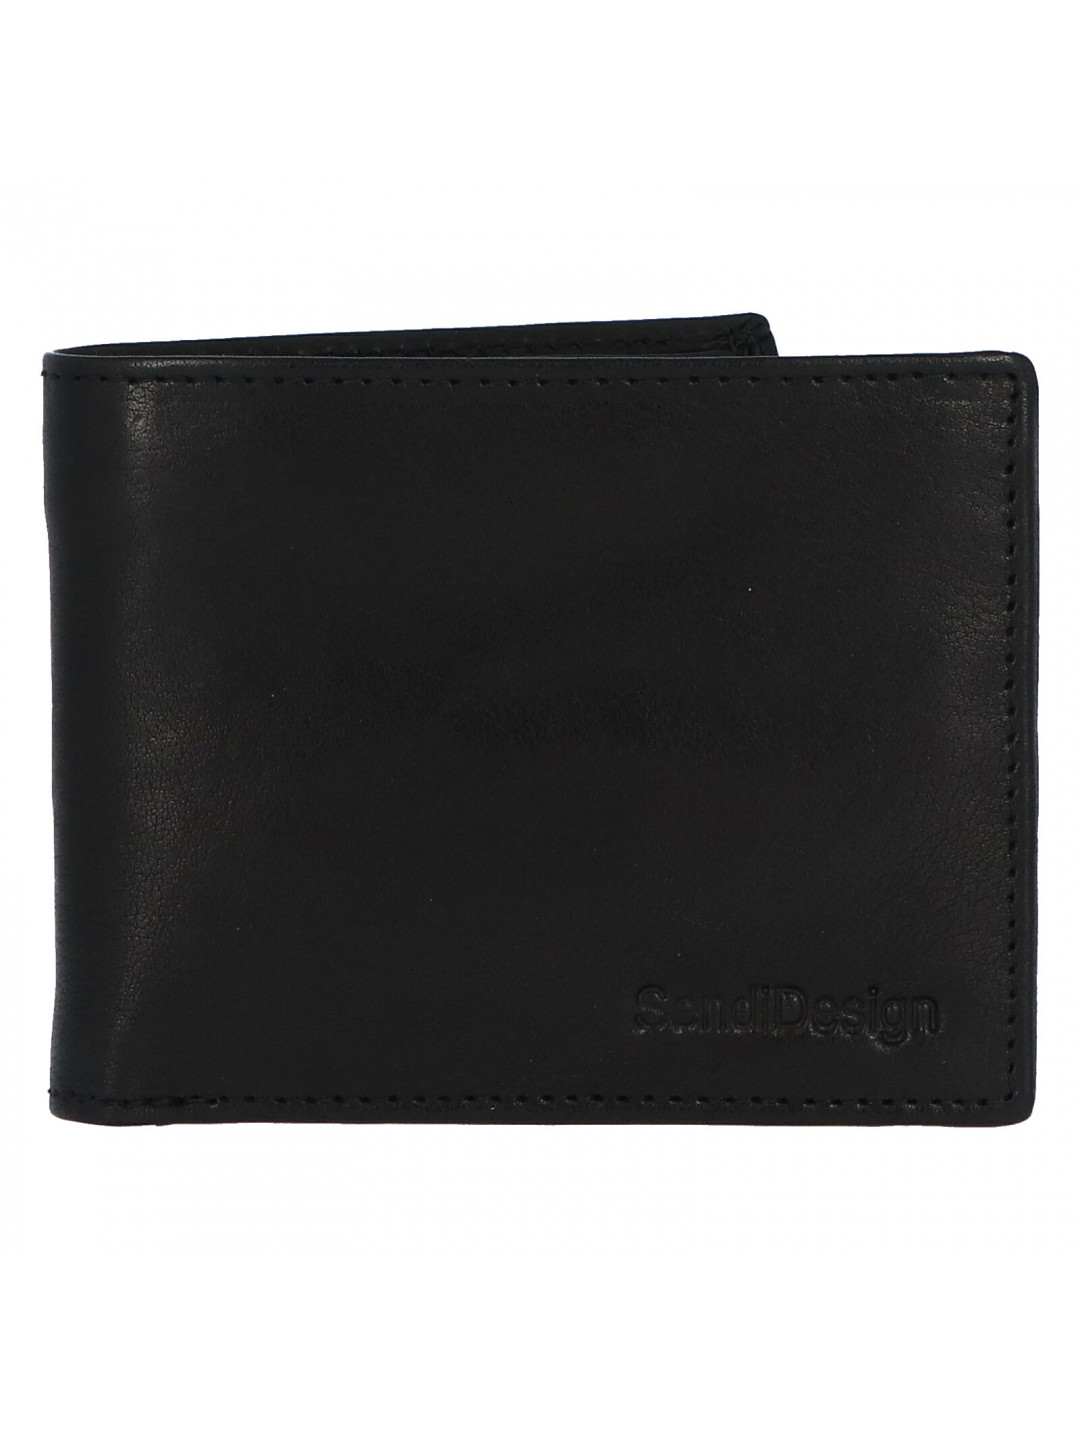 Pánská kožená peněženka černá – SendiDesign Boster